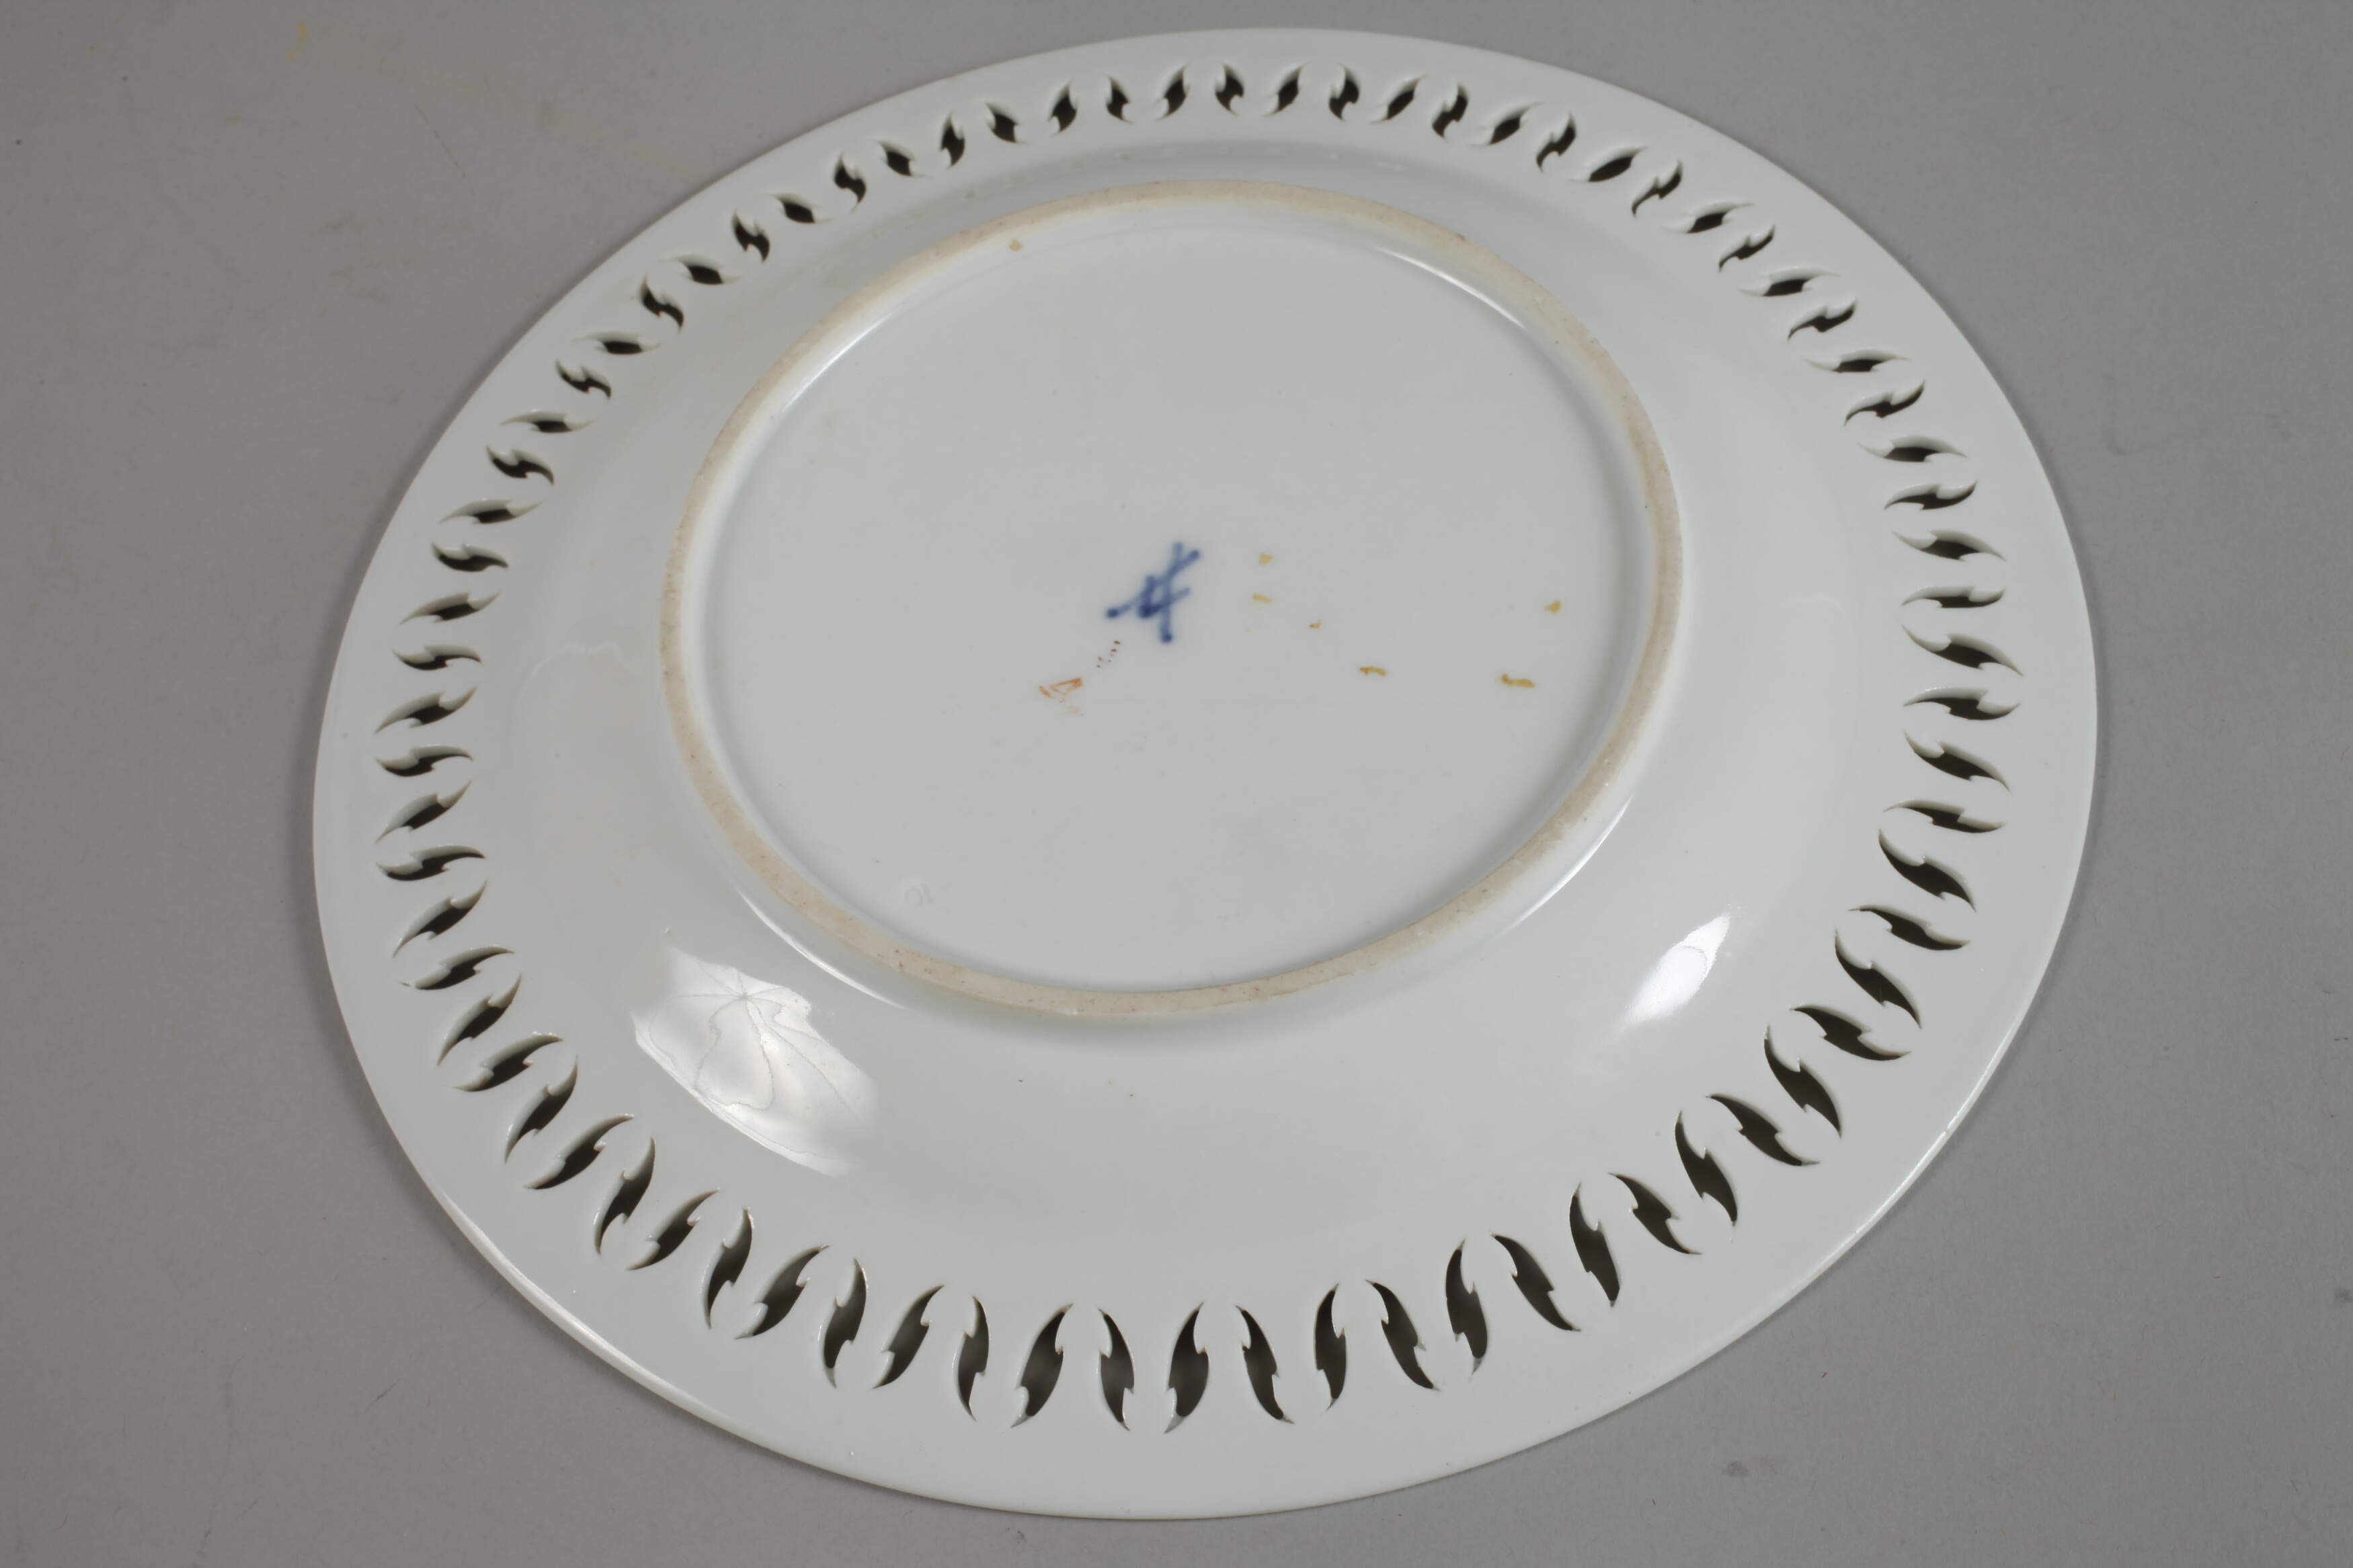 Meissen decorative plate "Kauffahrteiszene" - Image 3 of 4